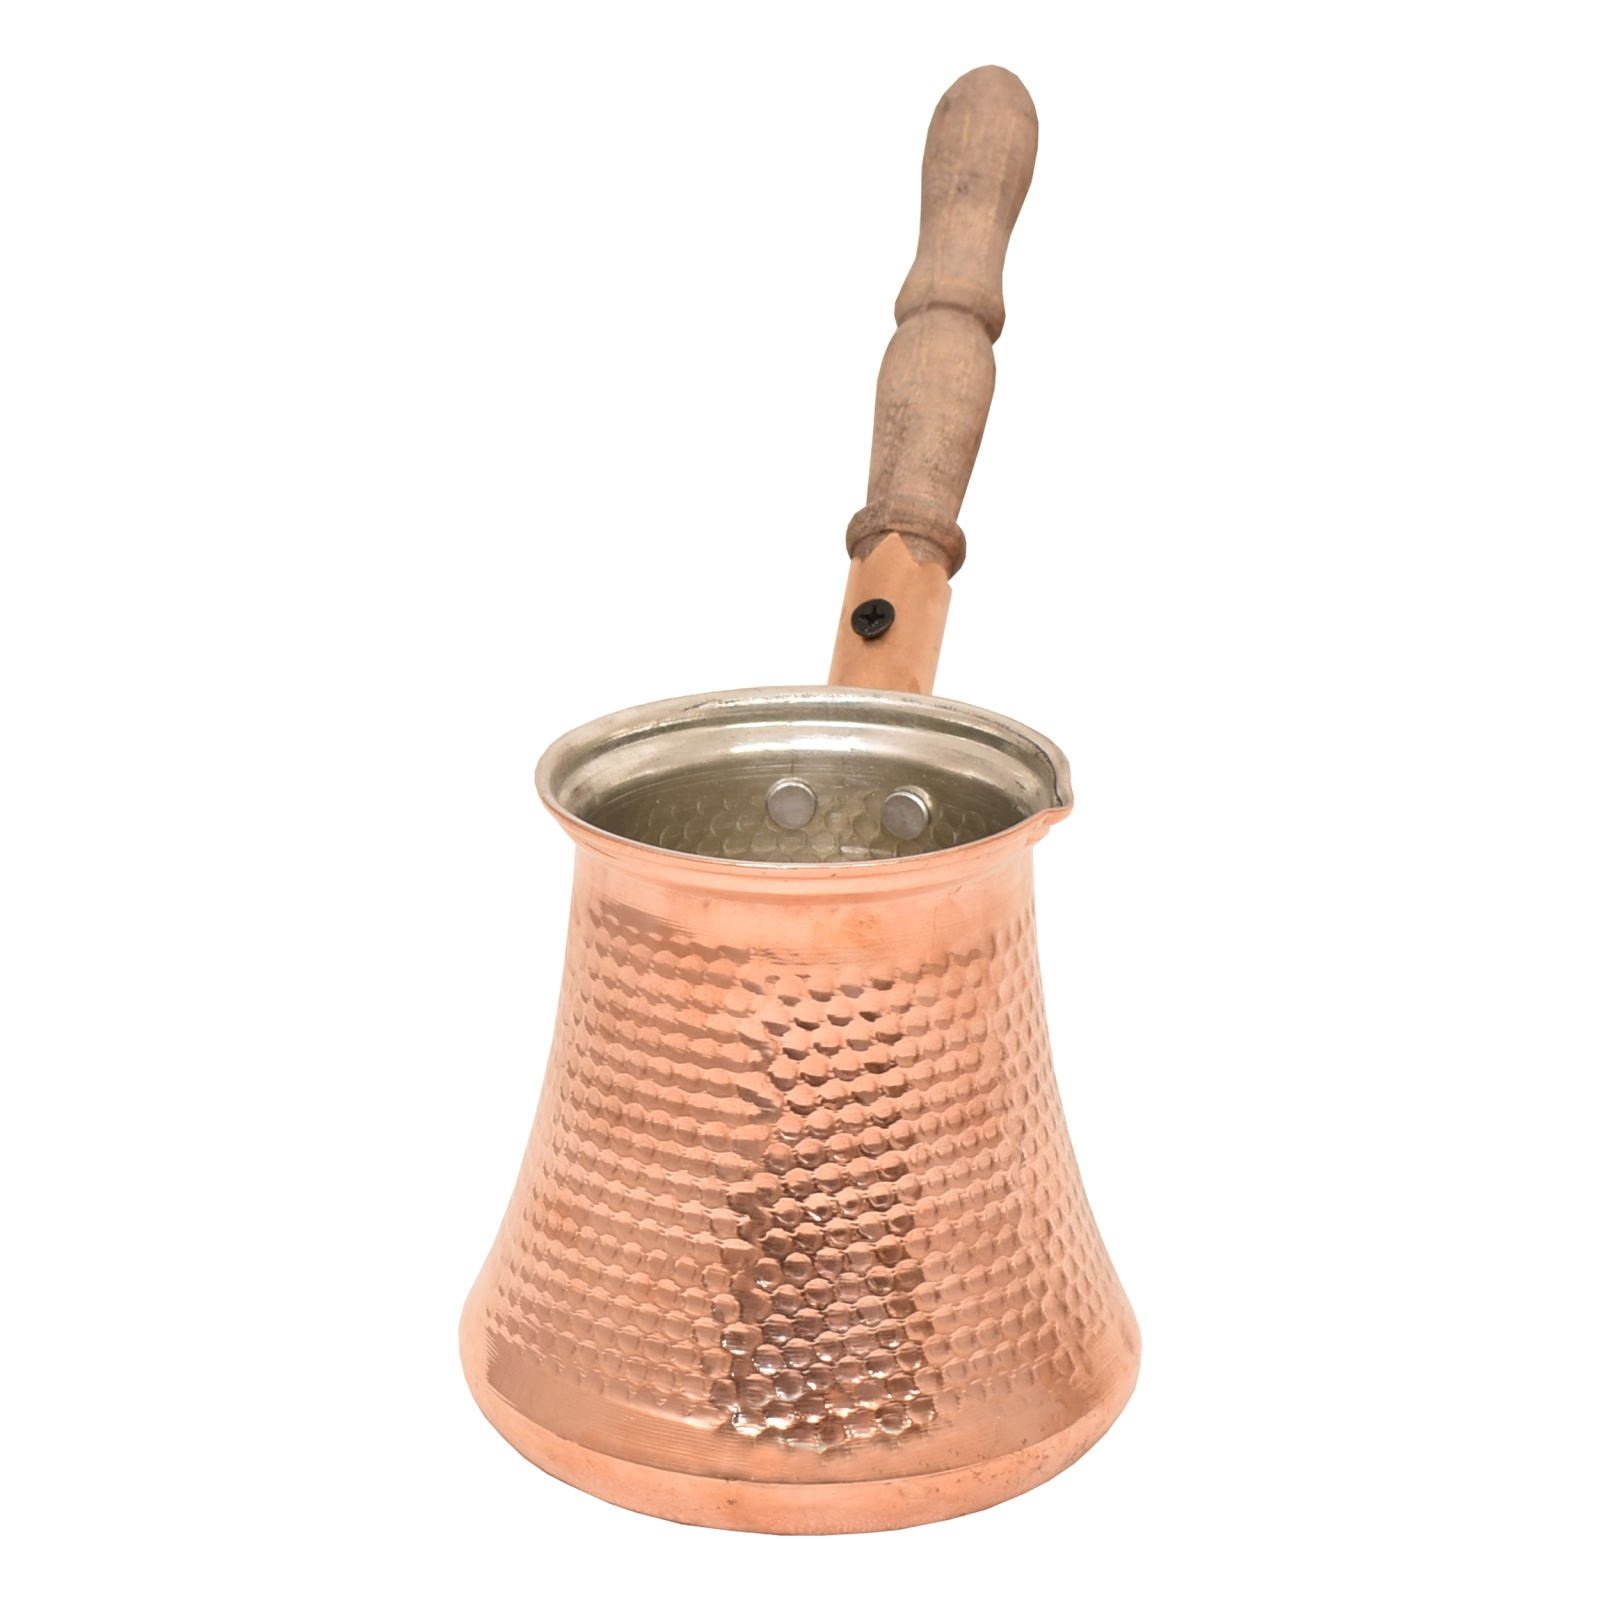 Handicraft Copper Coffeepot Code A2,acheter cuivre,acheter des objets en cuivre,acheter des objets en cuivre